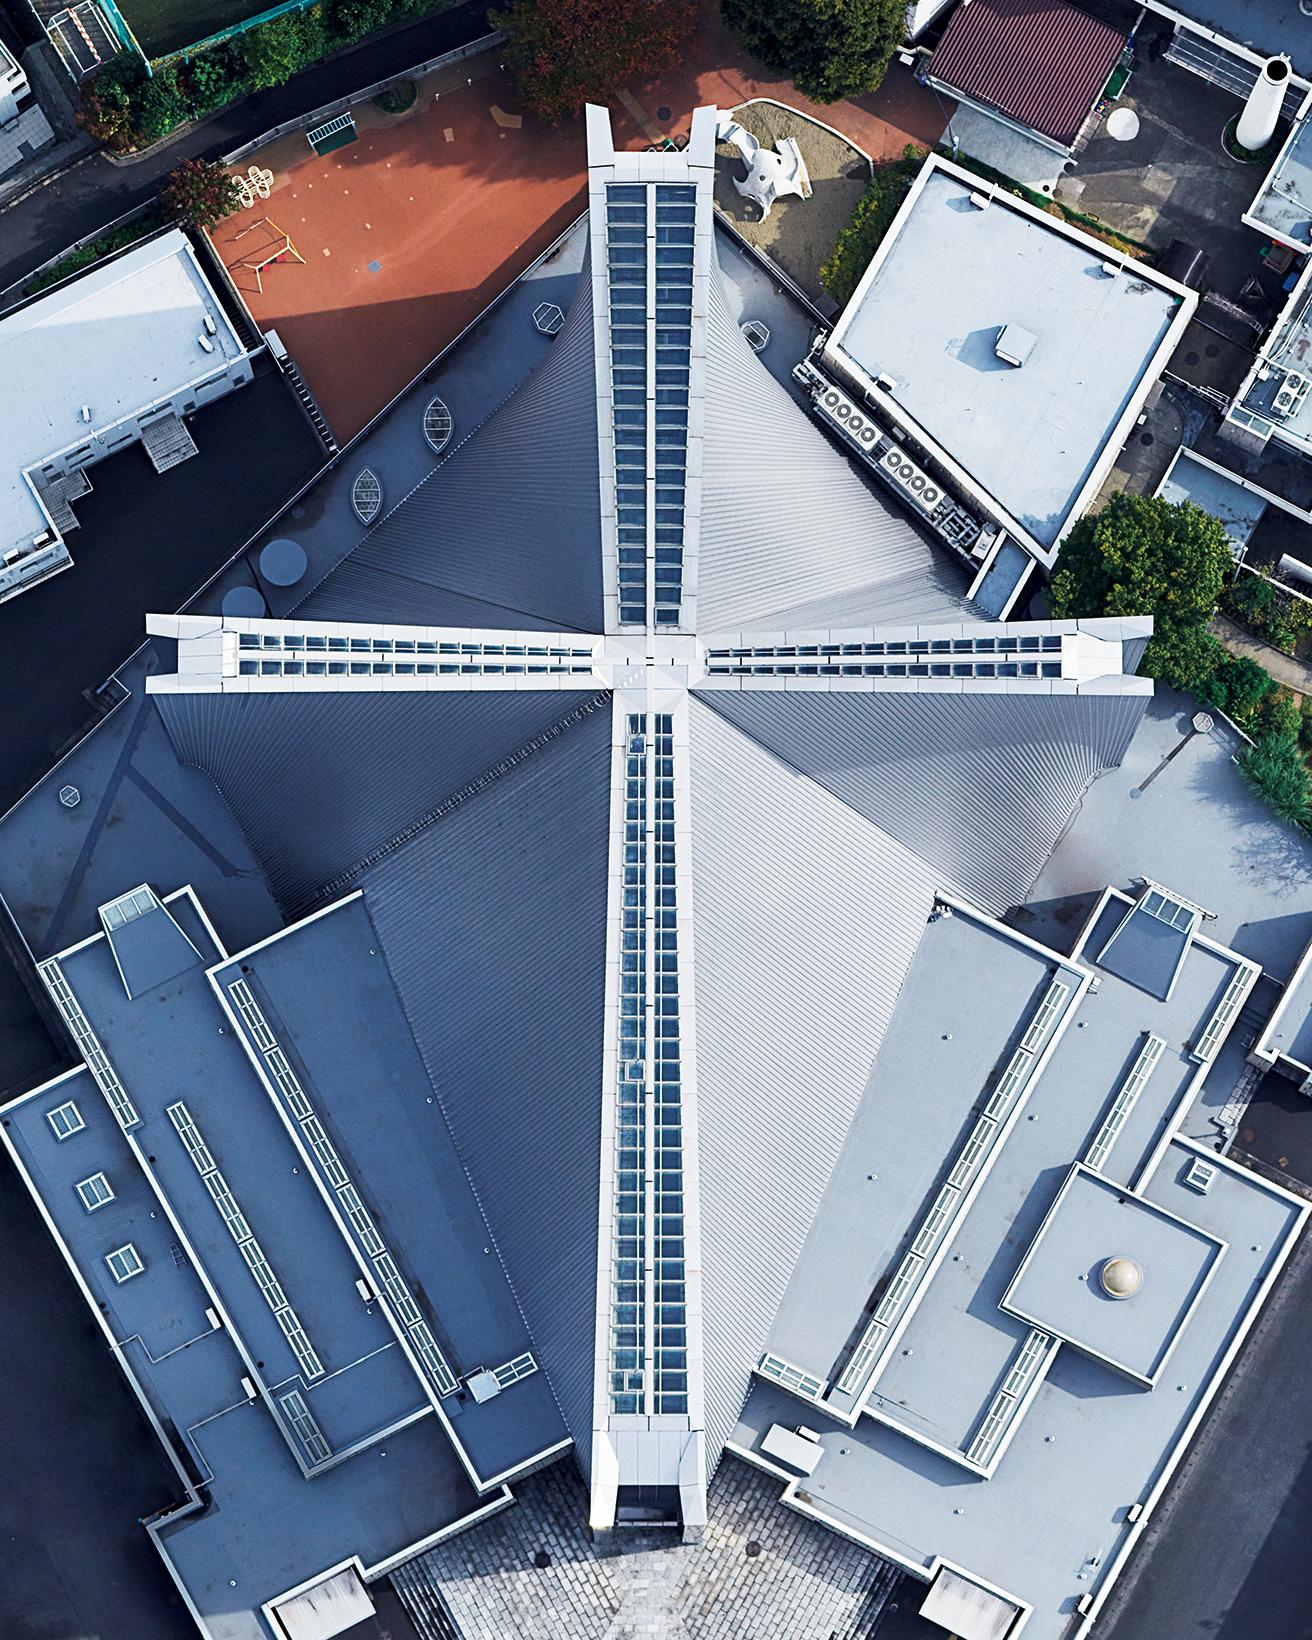 上空から見た〈東京カテドラル聖マリア大聖堂〉。